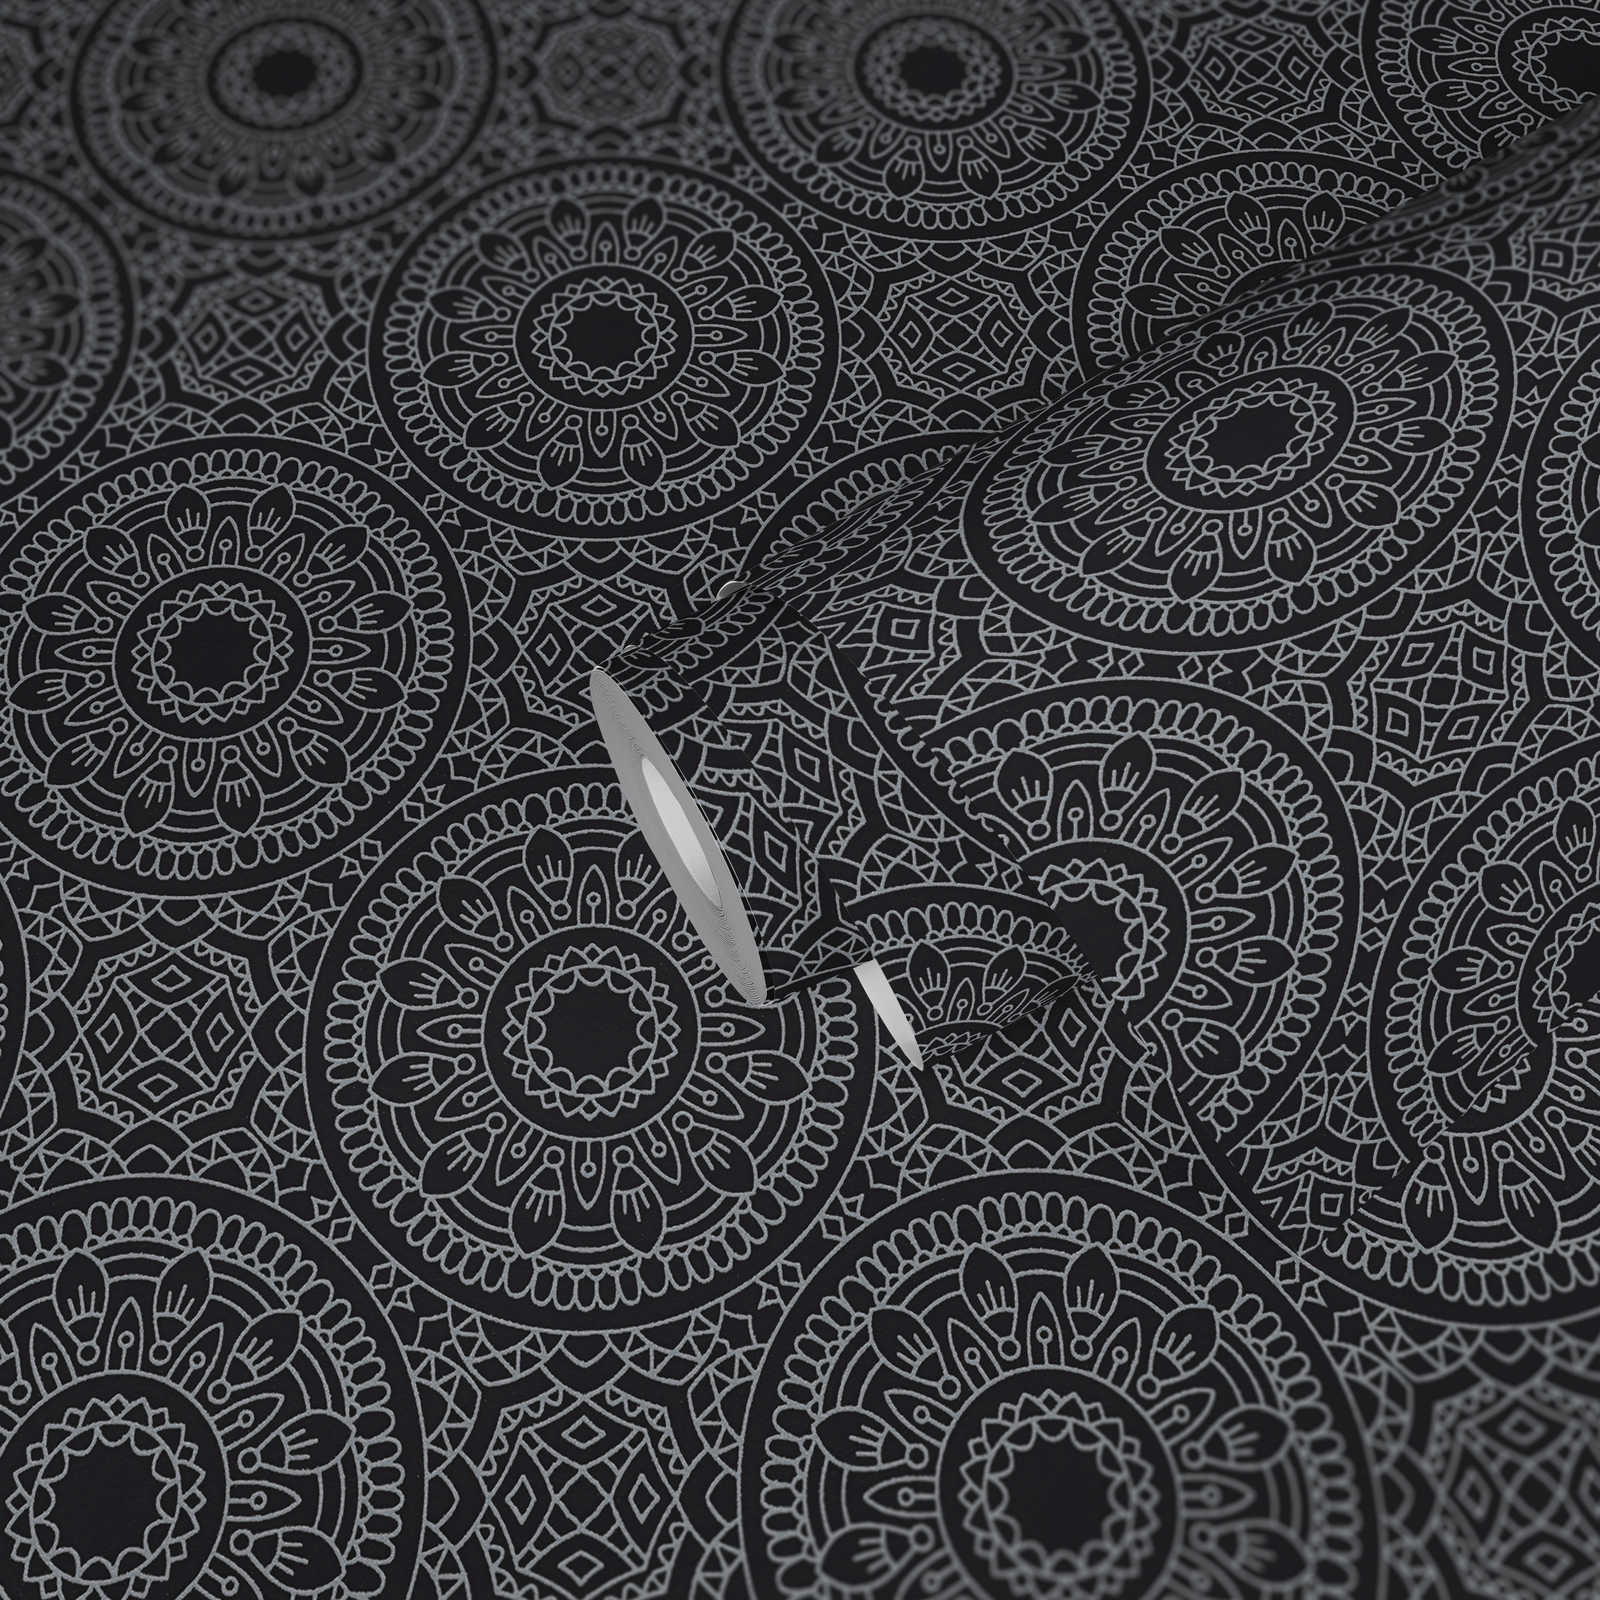             papier peint en papier graphique avec motif circulaire brillant lisse - noir, argenté
        